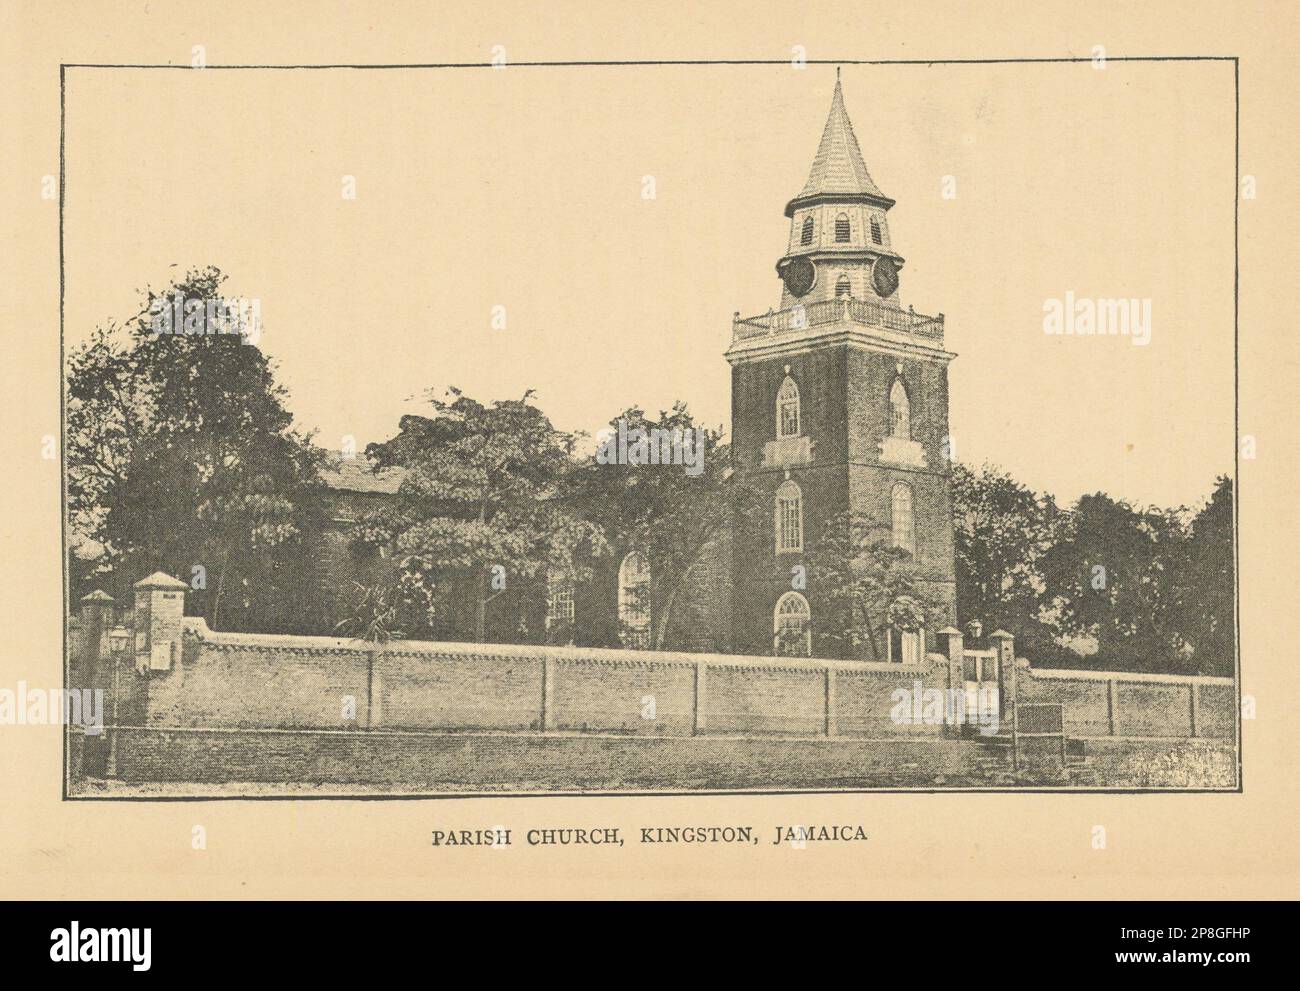 Église paroissiale de Kingston, Jamaïque. Reconstruit après le tremblement de terre de 1907. St Thomas 1889 Banque D'Images